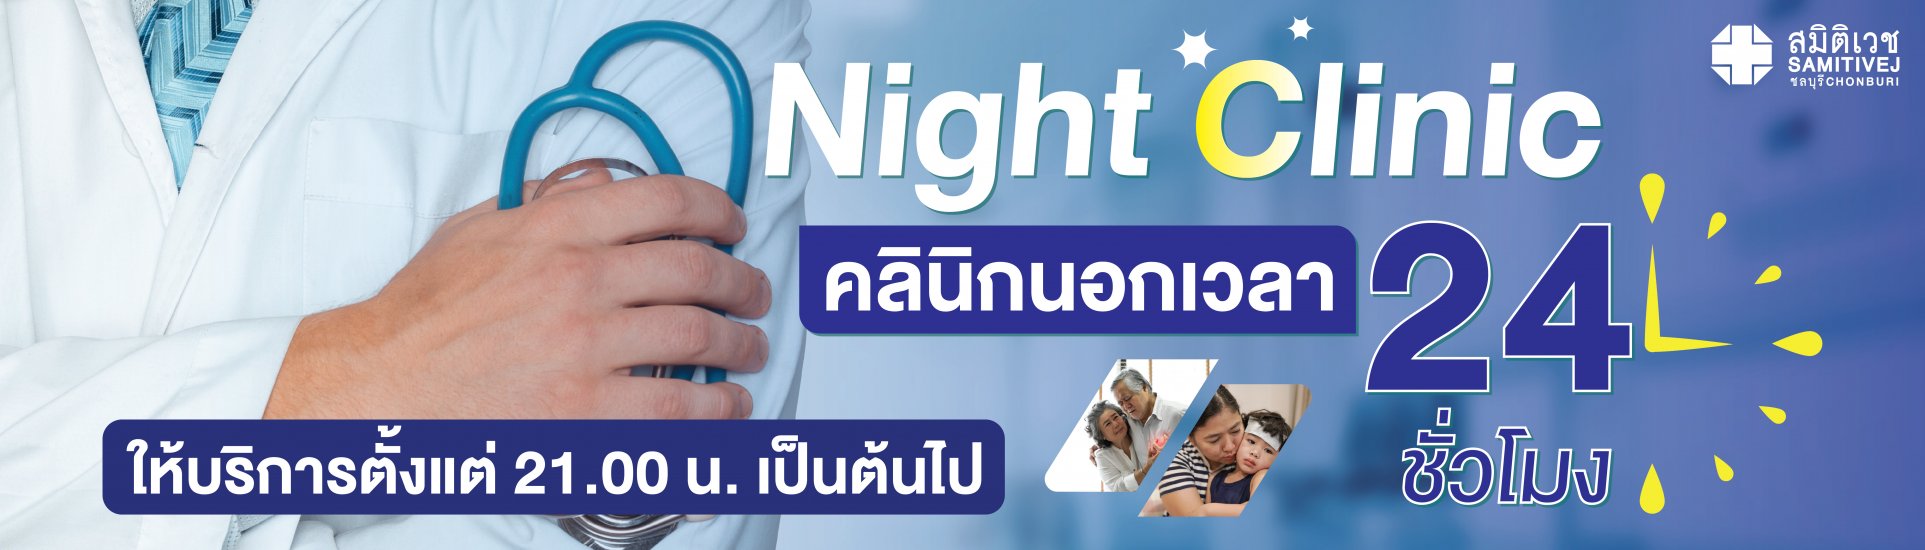 Night Clinic-samitivejchonburi-slide